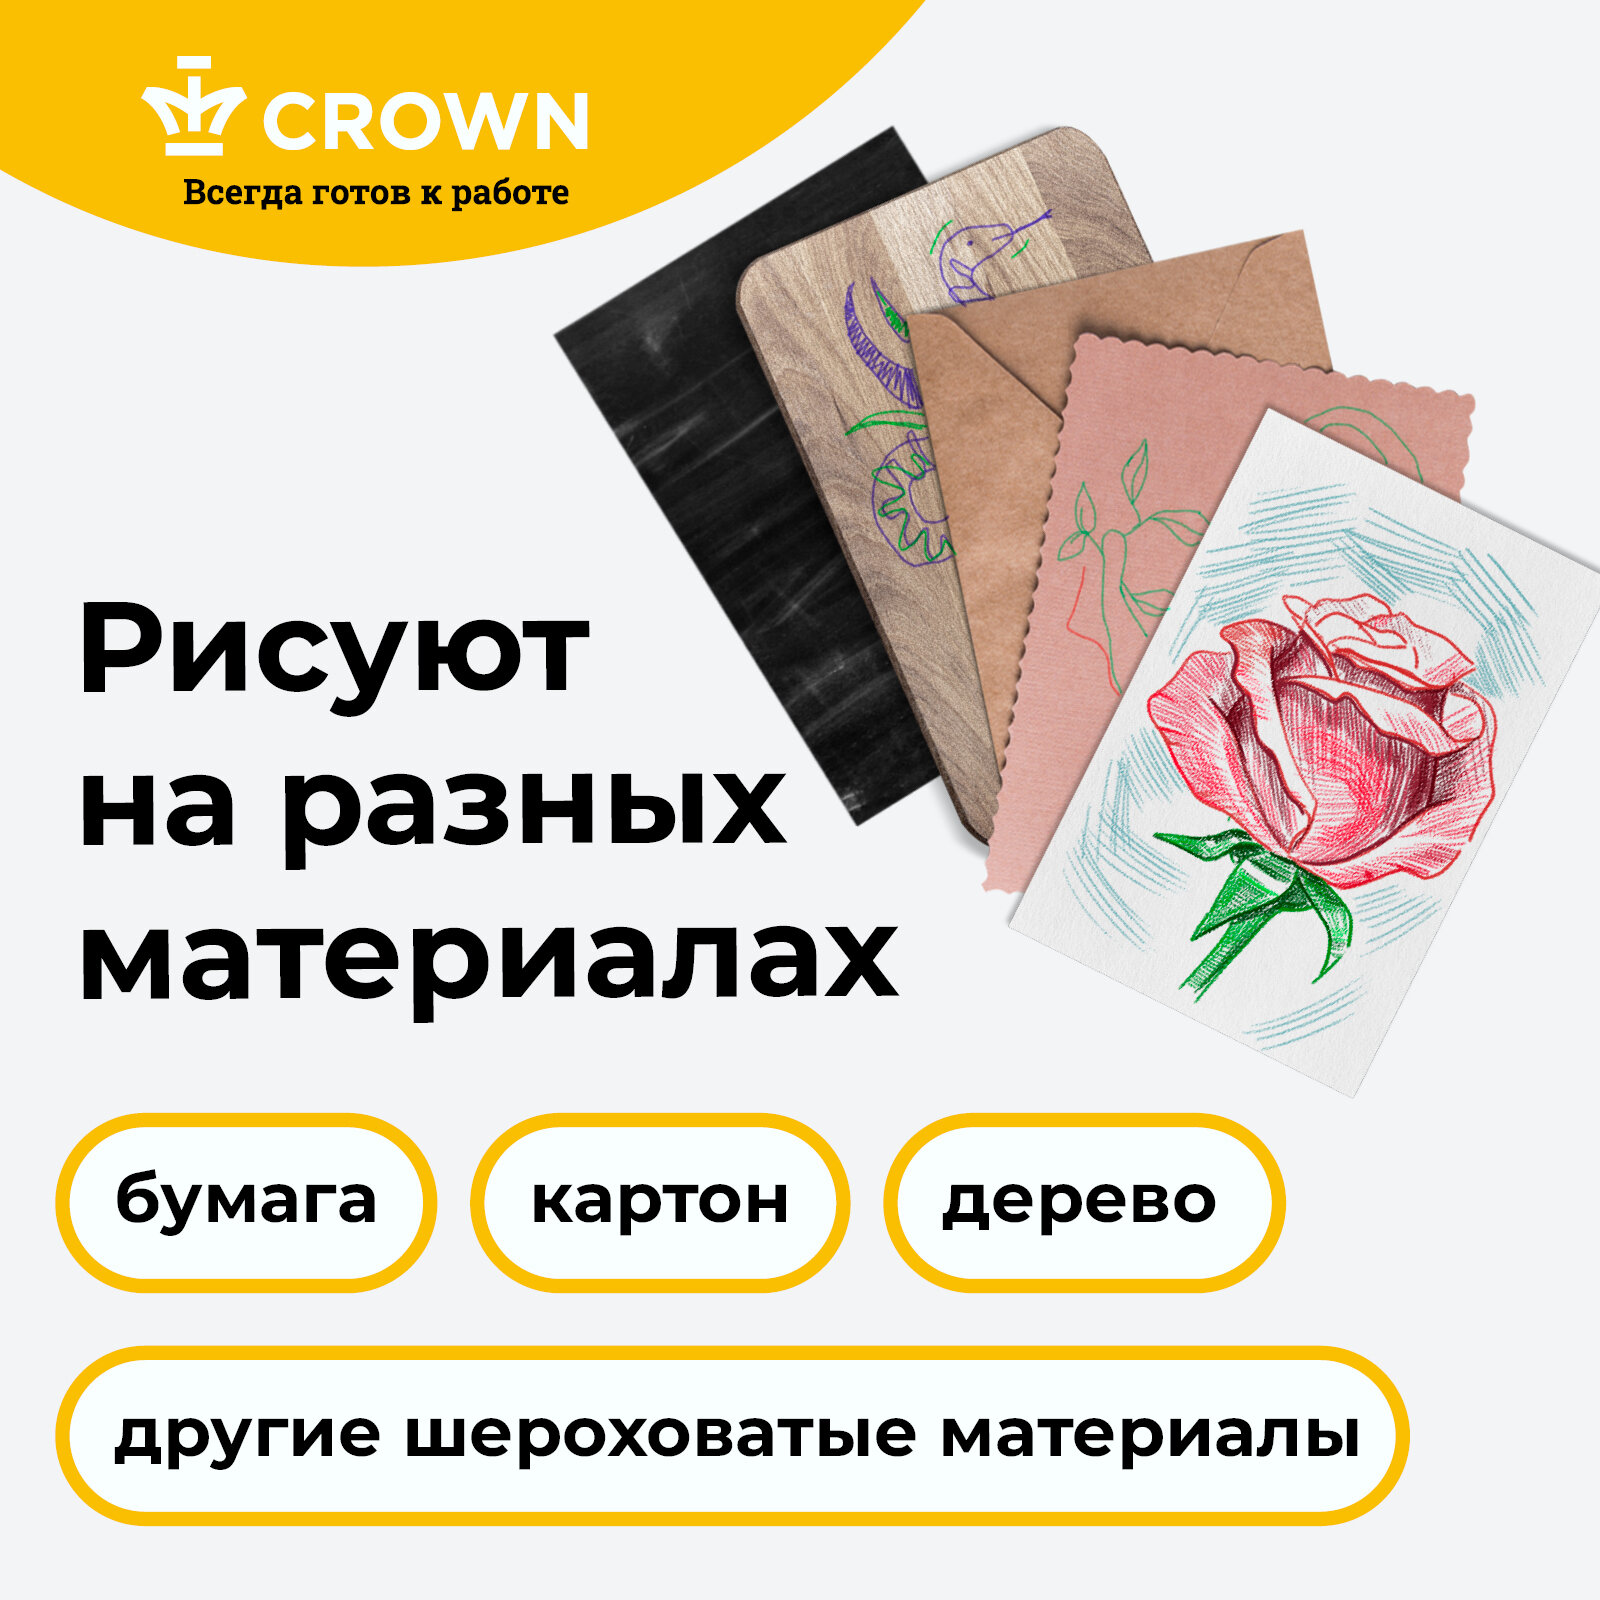 Crown - фото №11